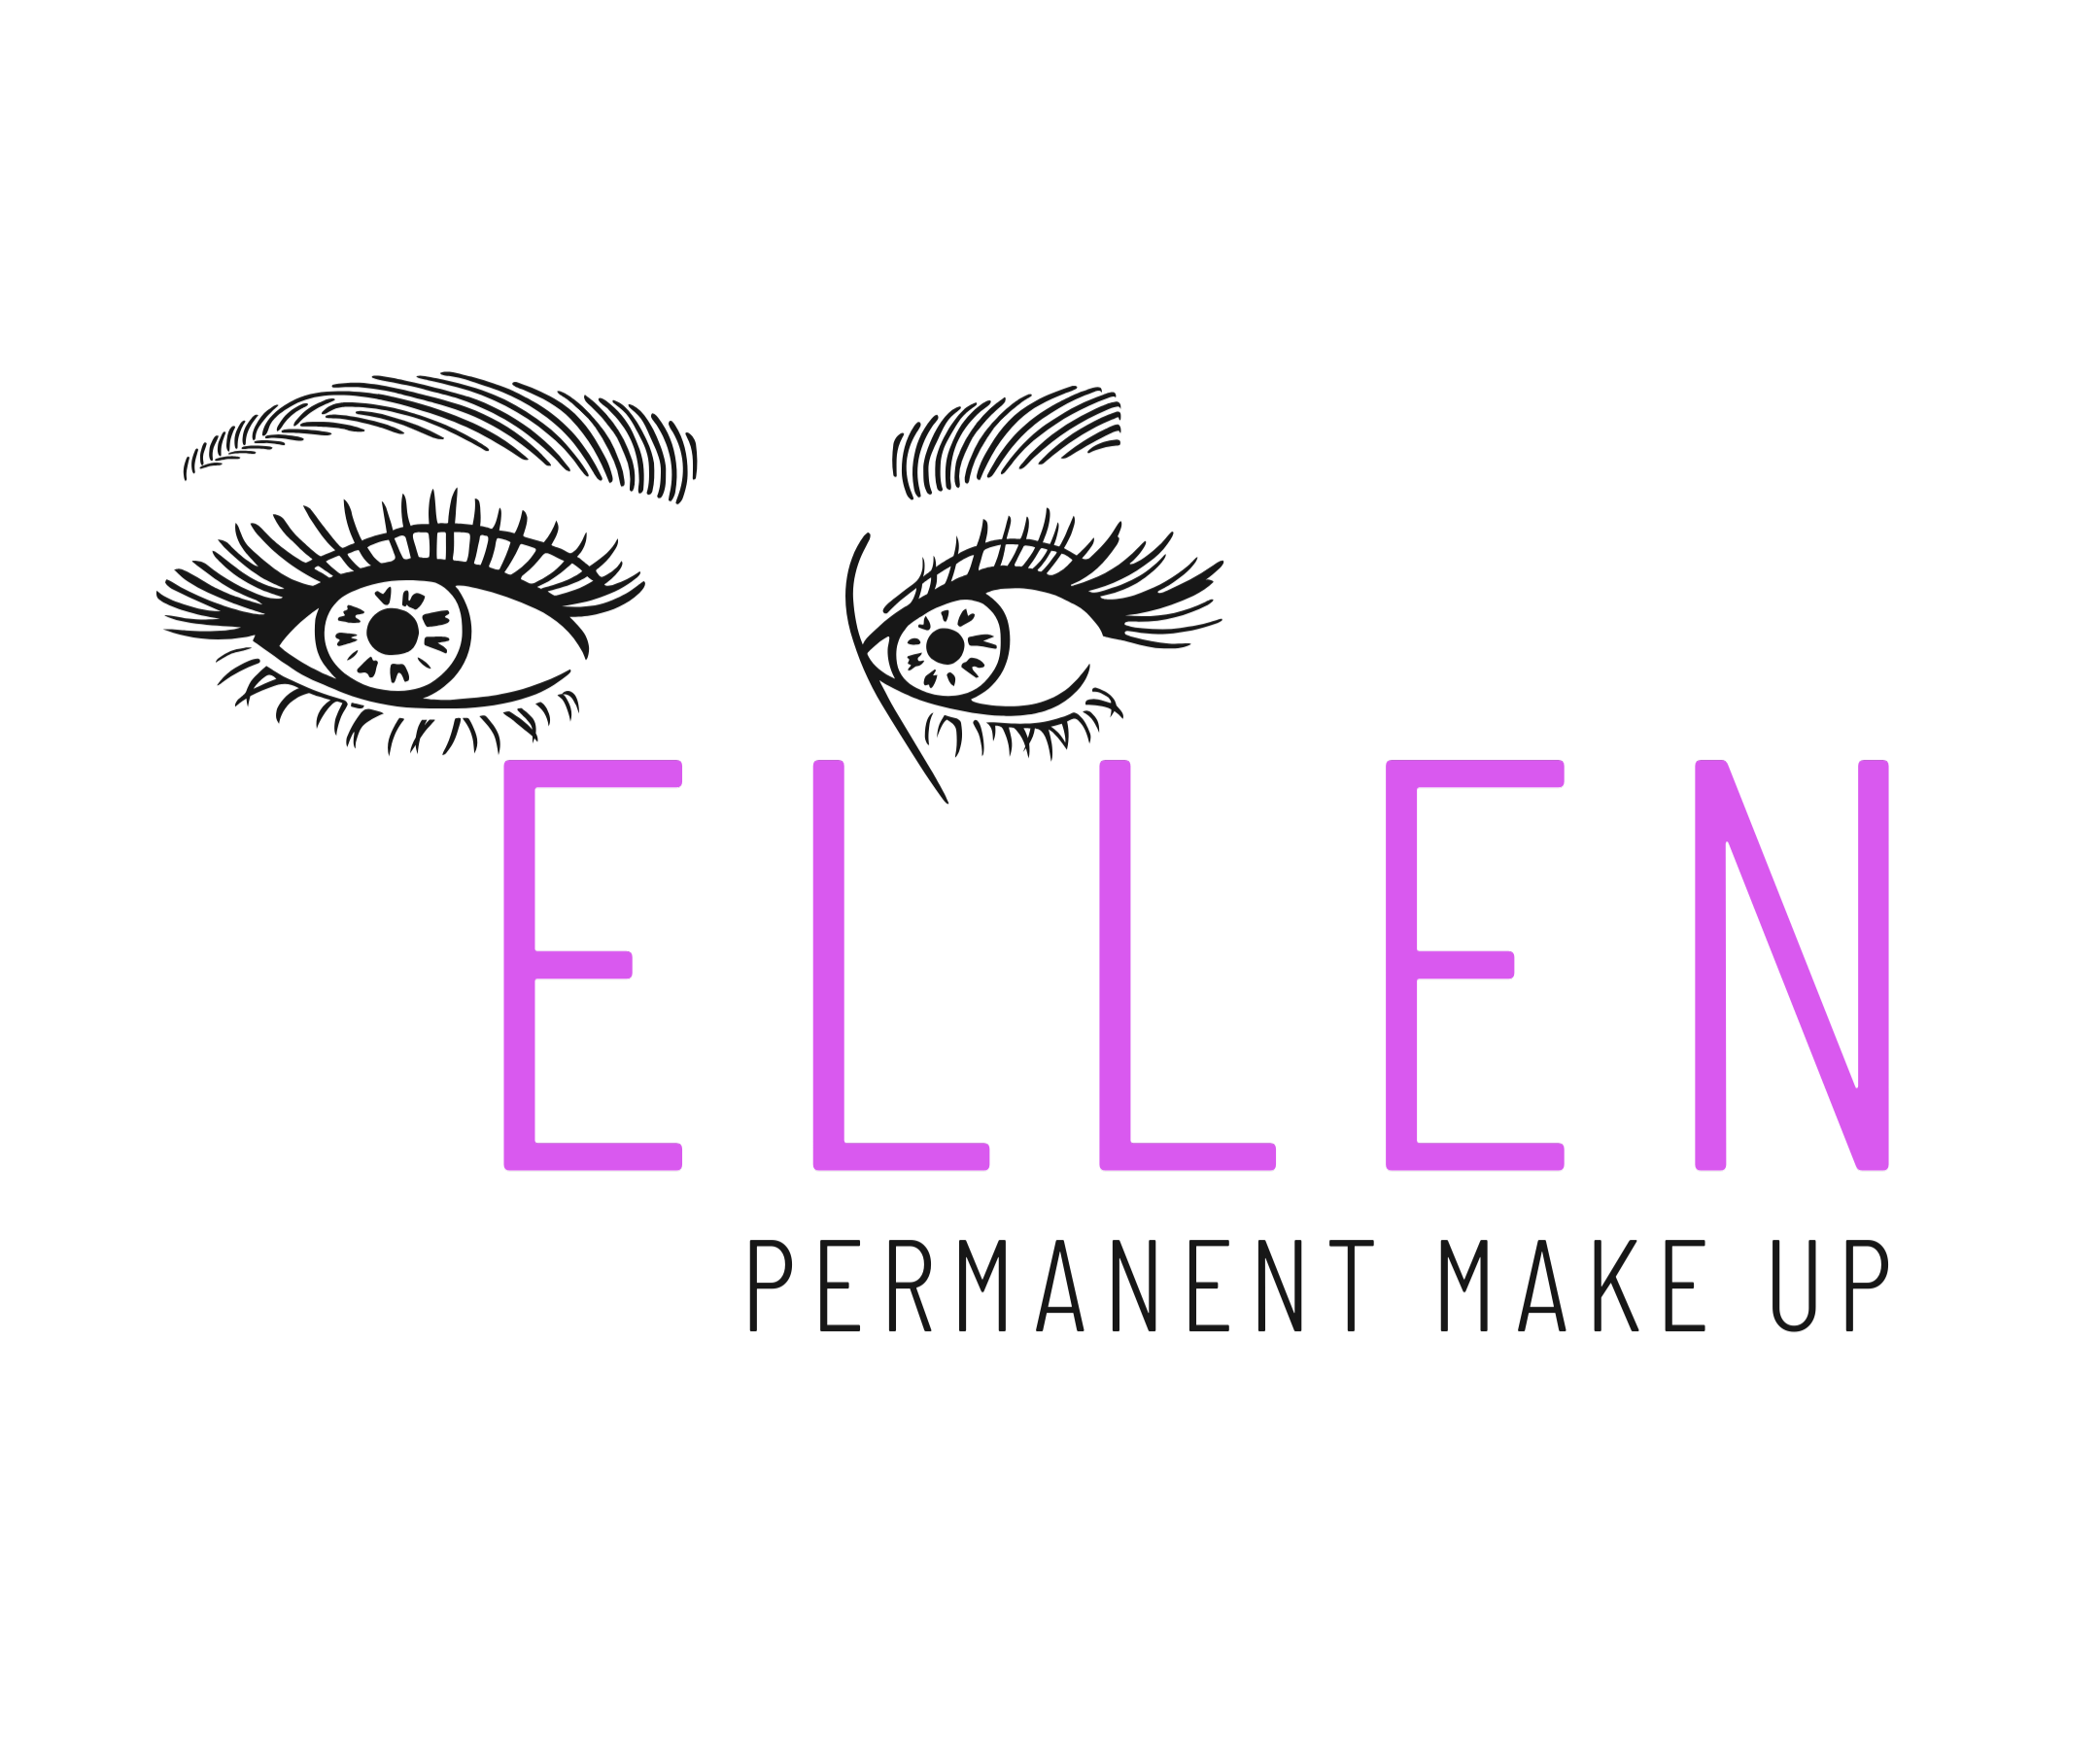 Permanent Make Up Ellen